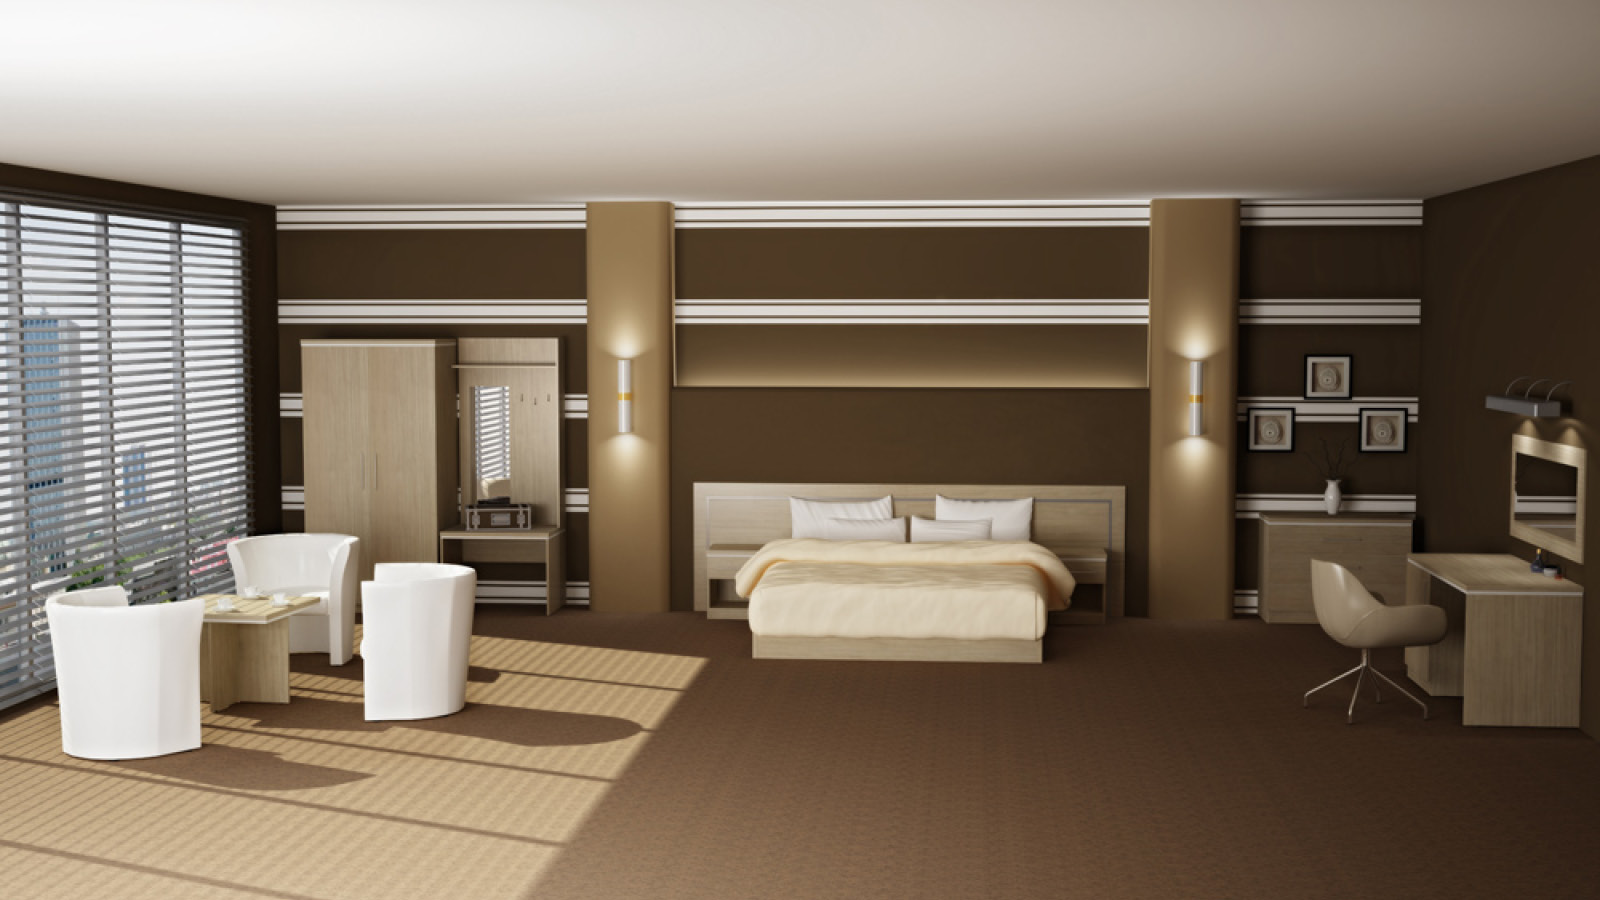 Pokój hotelowy w łączonych akcentach brązu i bieli. Na wyposażeniu: duże łóżko z panelem, stół w otoczeniu foteli, garderoba.